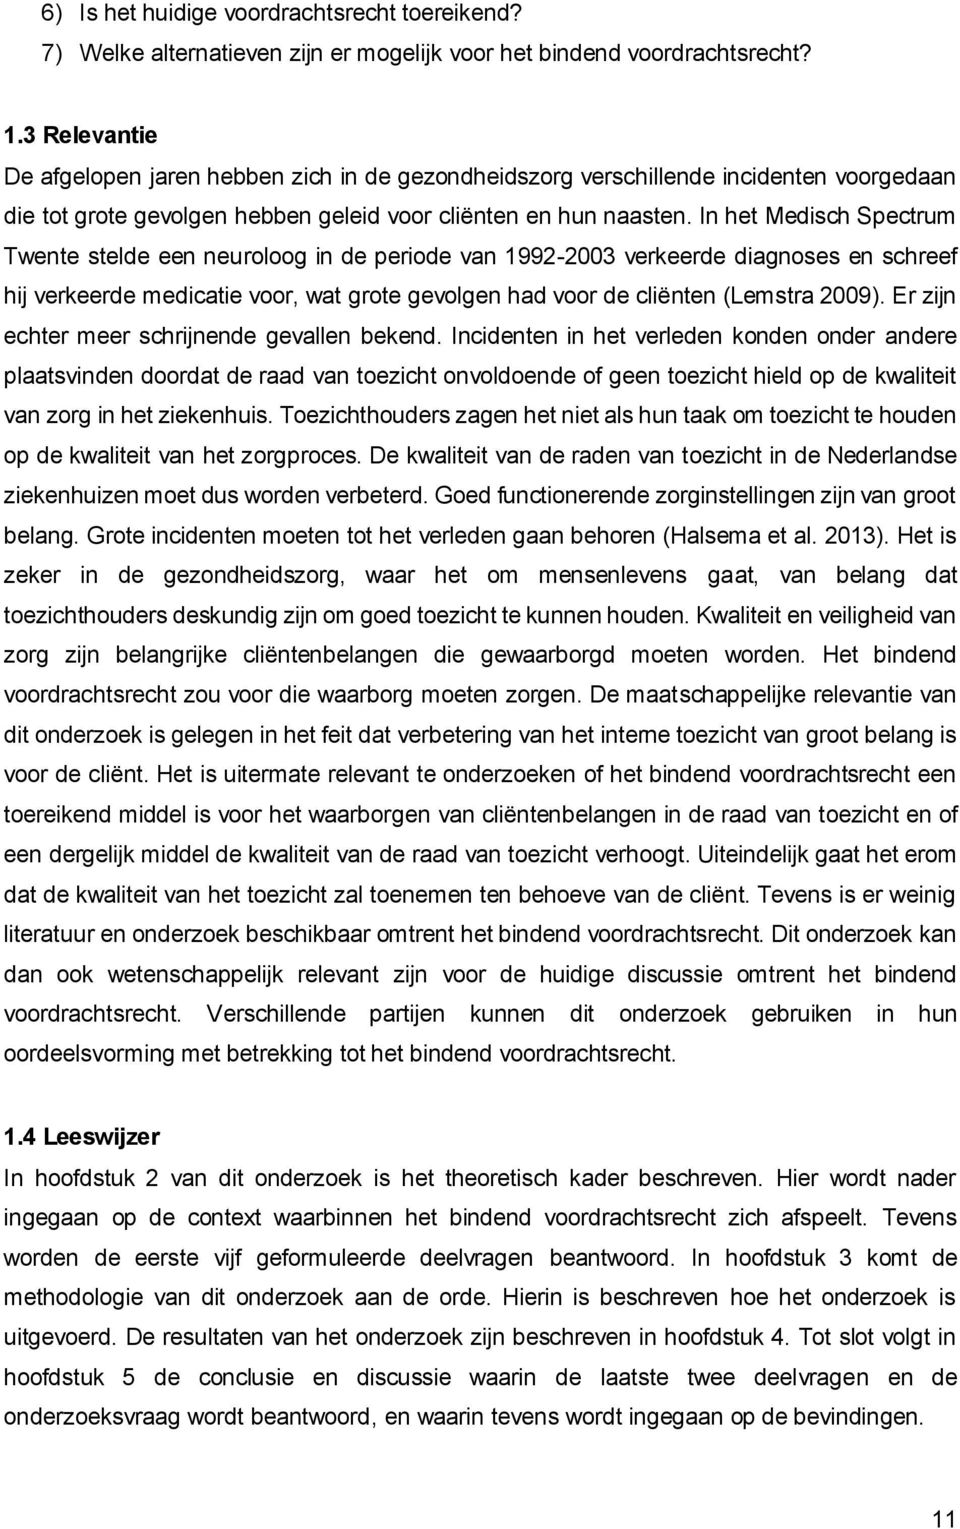 In het Medisch Spectrum Twente stelde een neuroloog in de periode van 1992-2003 verkeerde diagnoses en schreef hij verkeerde medicatie voor, wat grote gevolgen had voor de cliënten (Lemstra 2009).